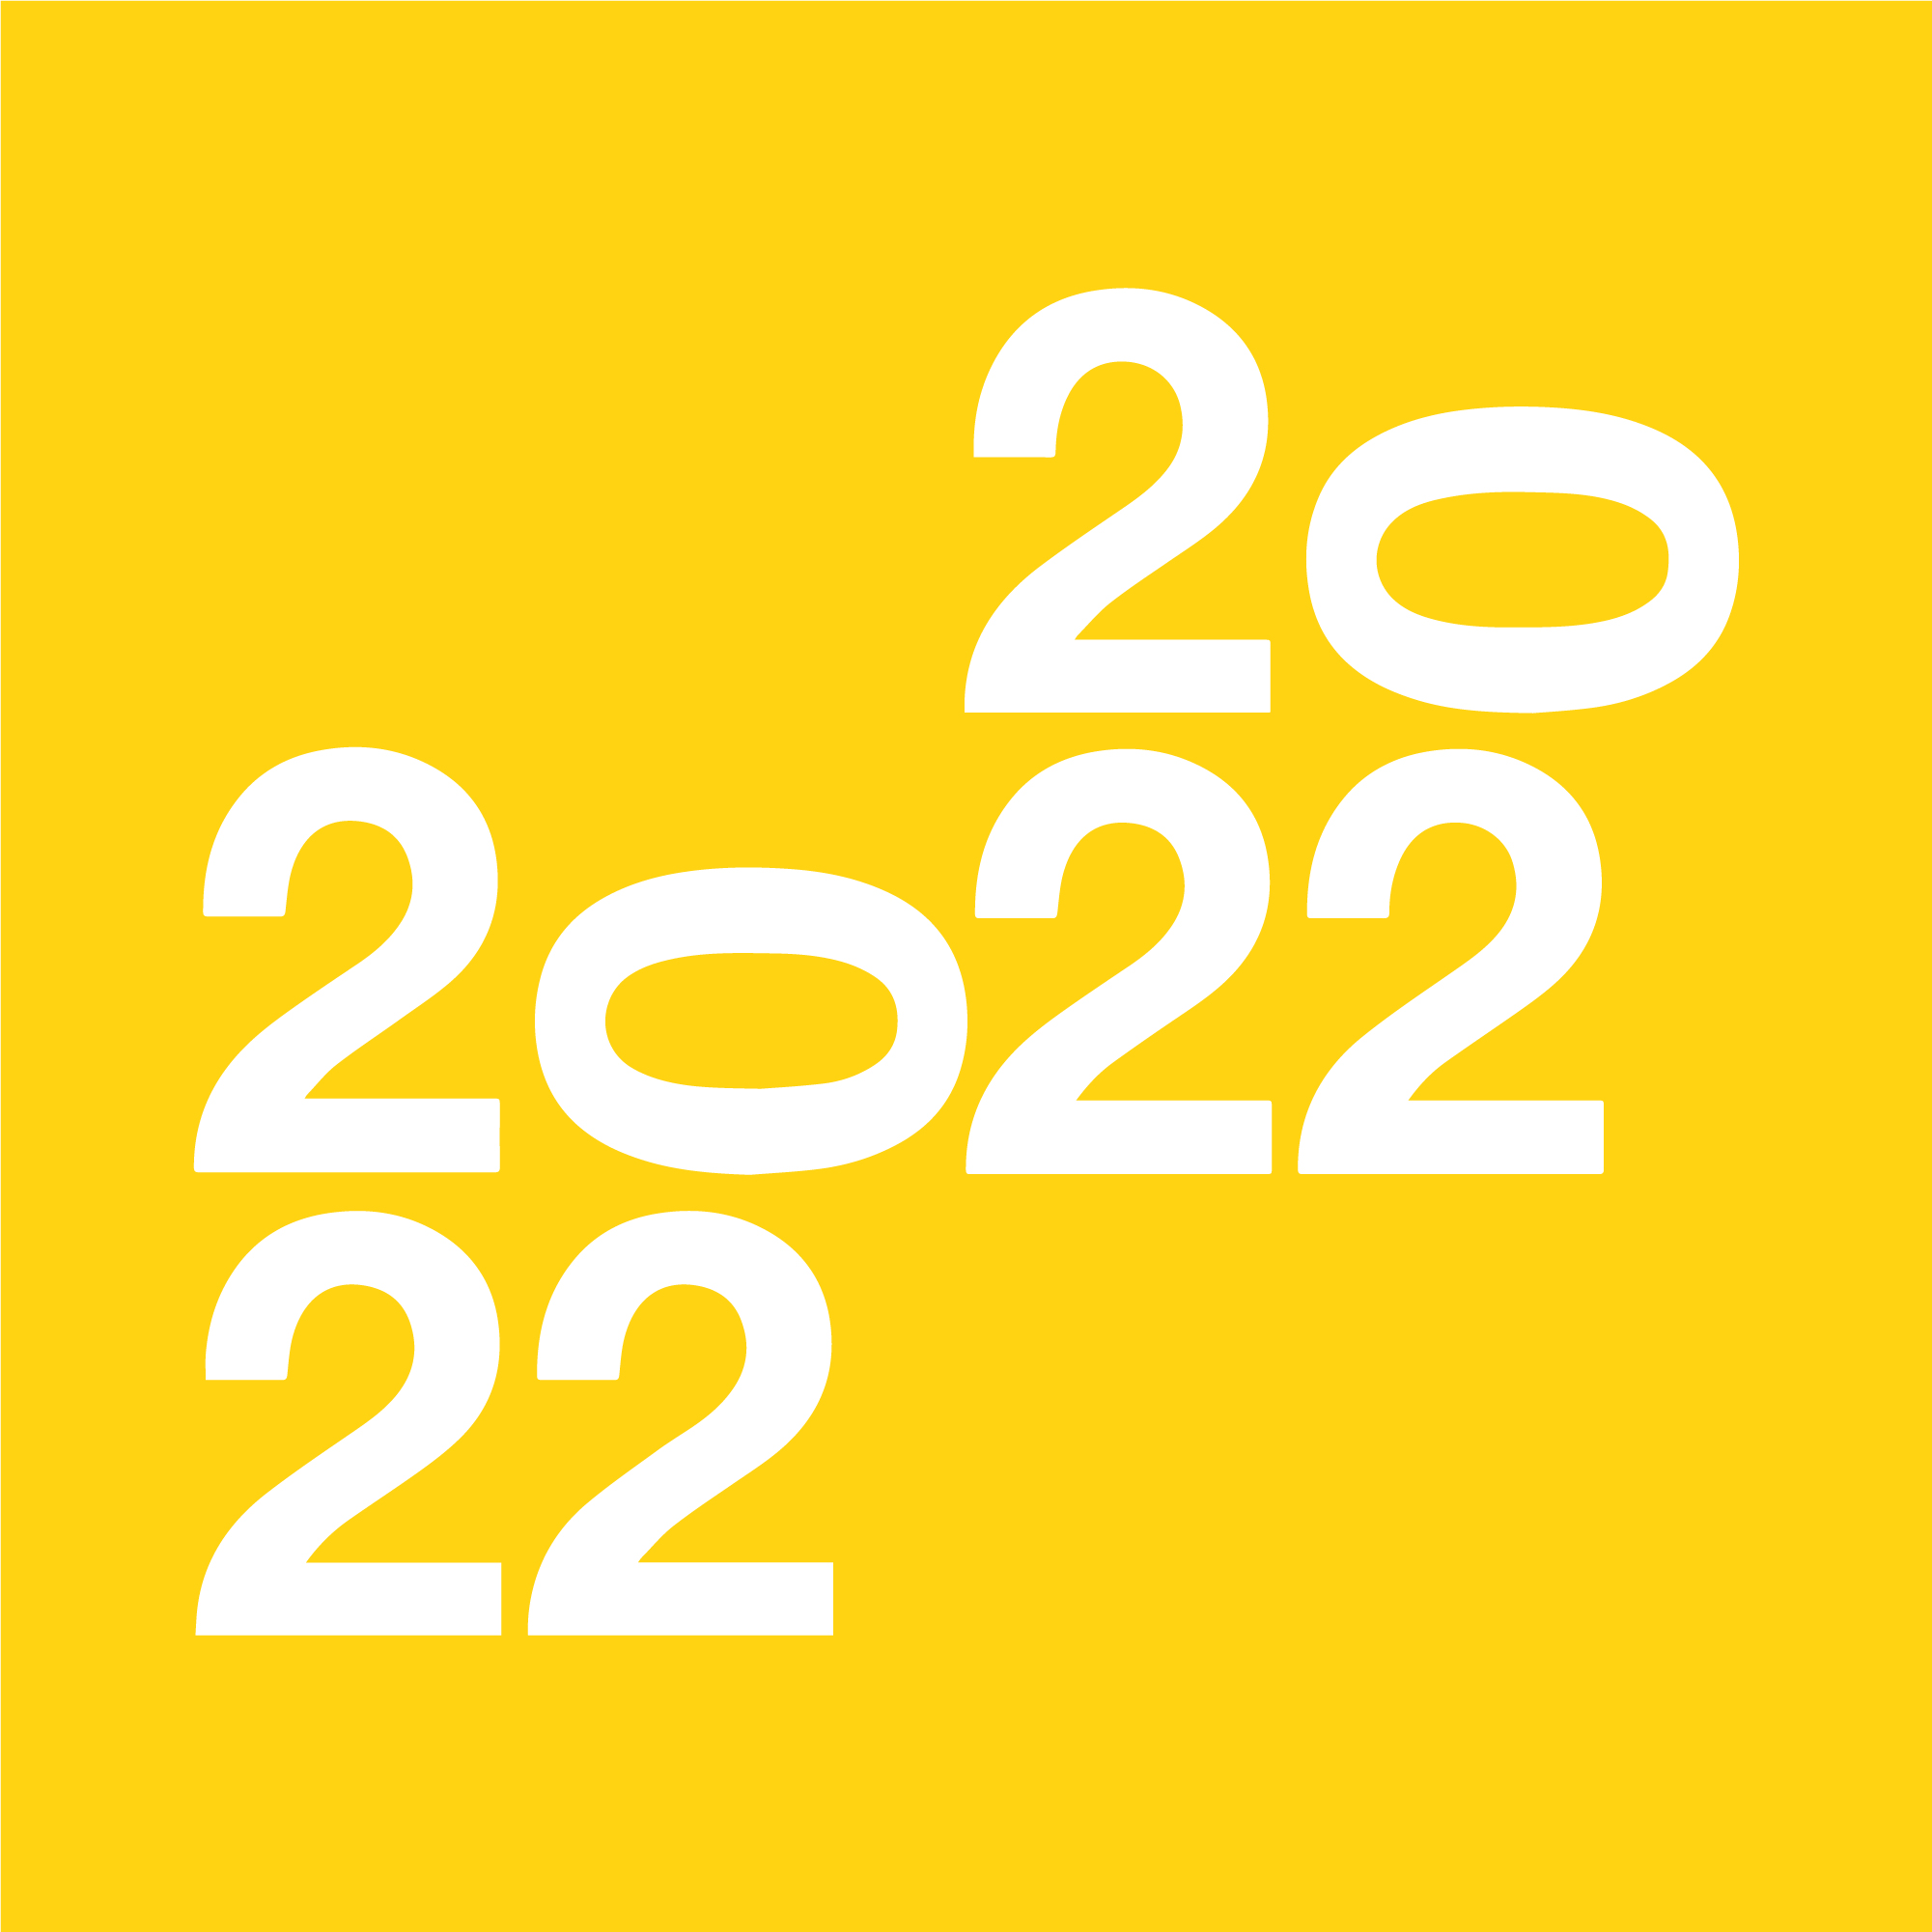 2022 - cores/negativo (2022)